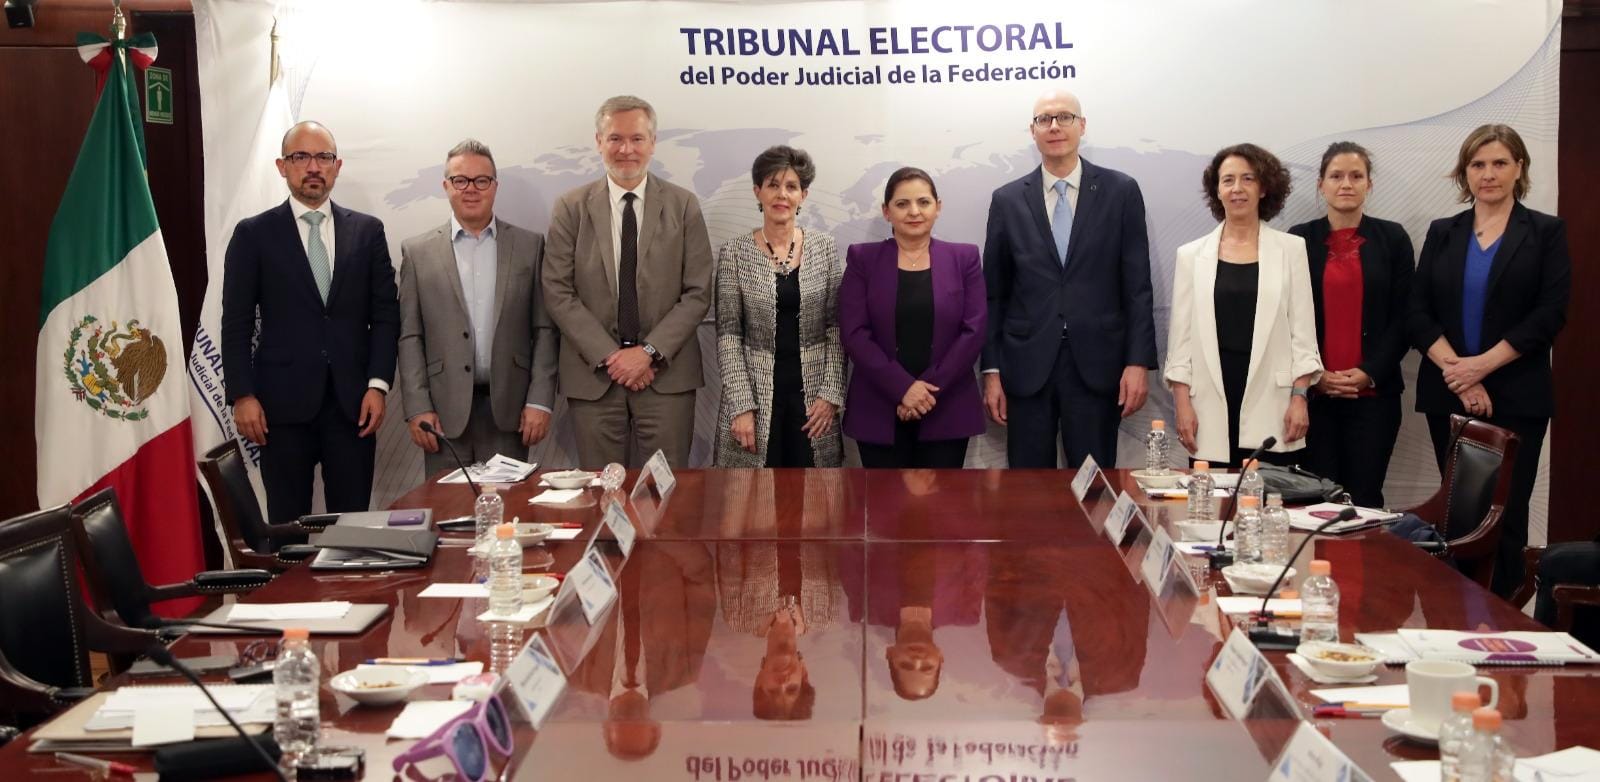 El TEPJF es de puertas abiertas a la observación electoral internacional: magistrada presidenta Mónica Soto